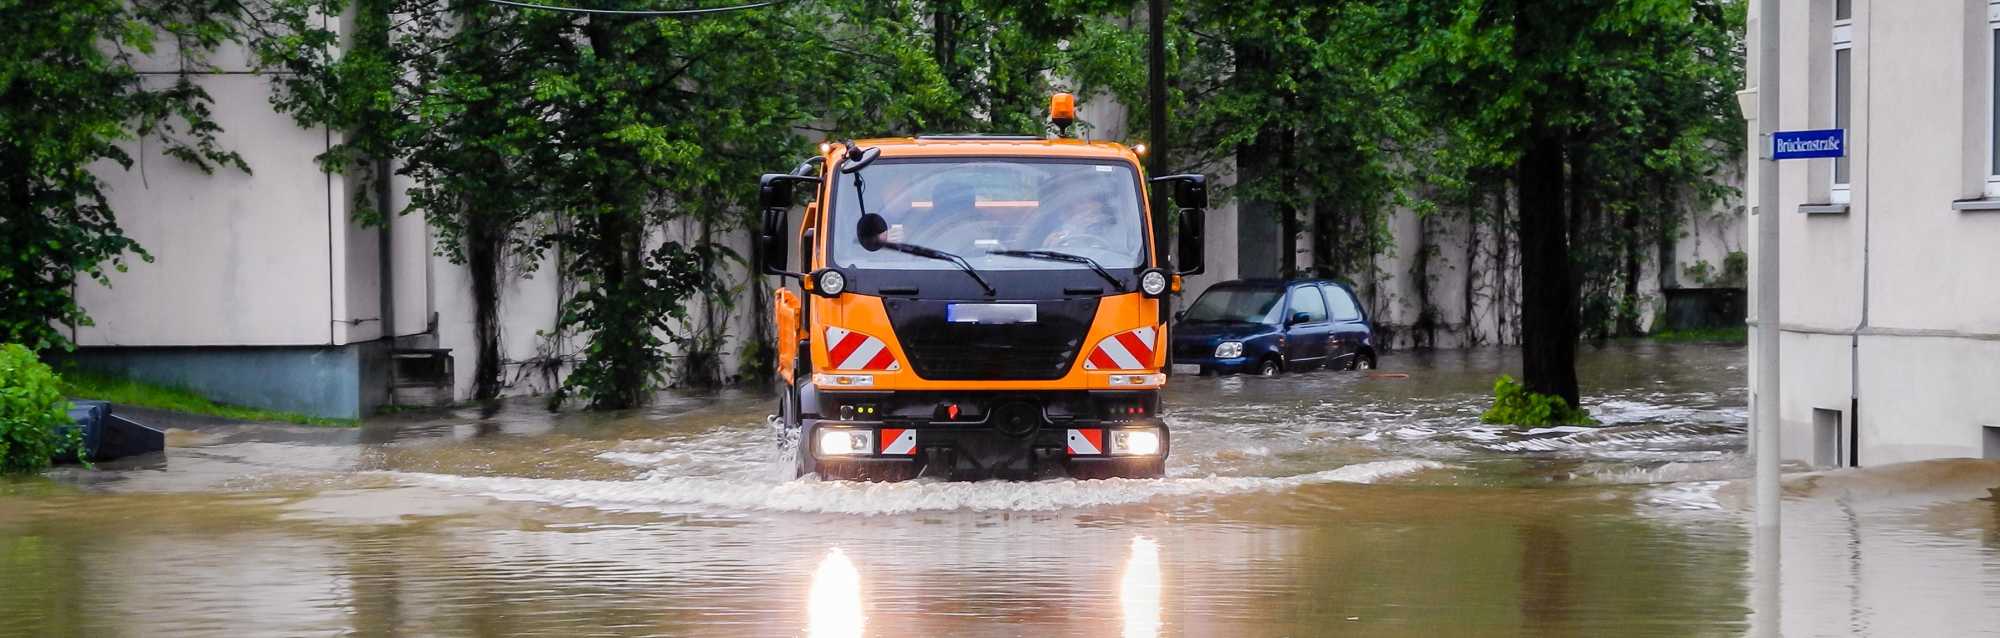 Kommunaler LKW fährt durch ein Hochwassergebiet